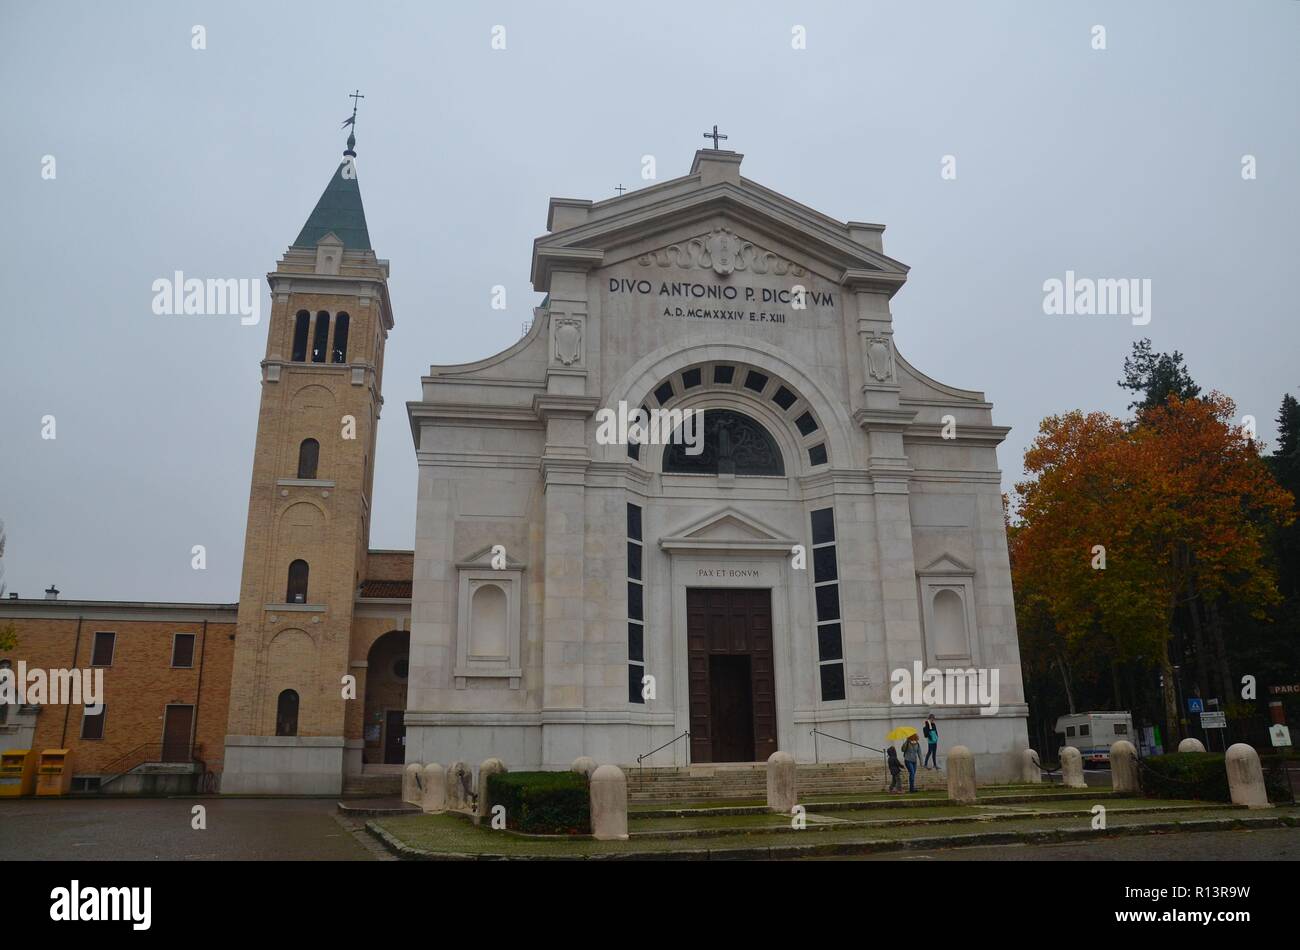 Predappio in Emilia Romagna, Italien, der Geburtsort Mussolinis, ist geprägt von faschistischer Architektur und Souvenirläden: Kirche San Antonio Foto Stock